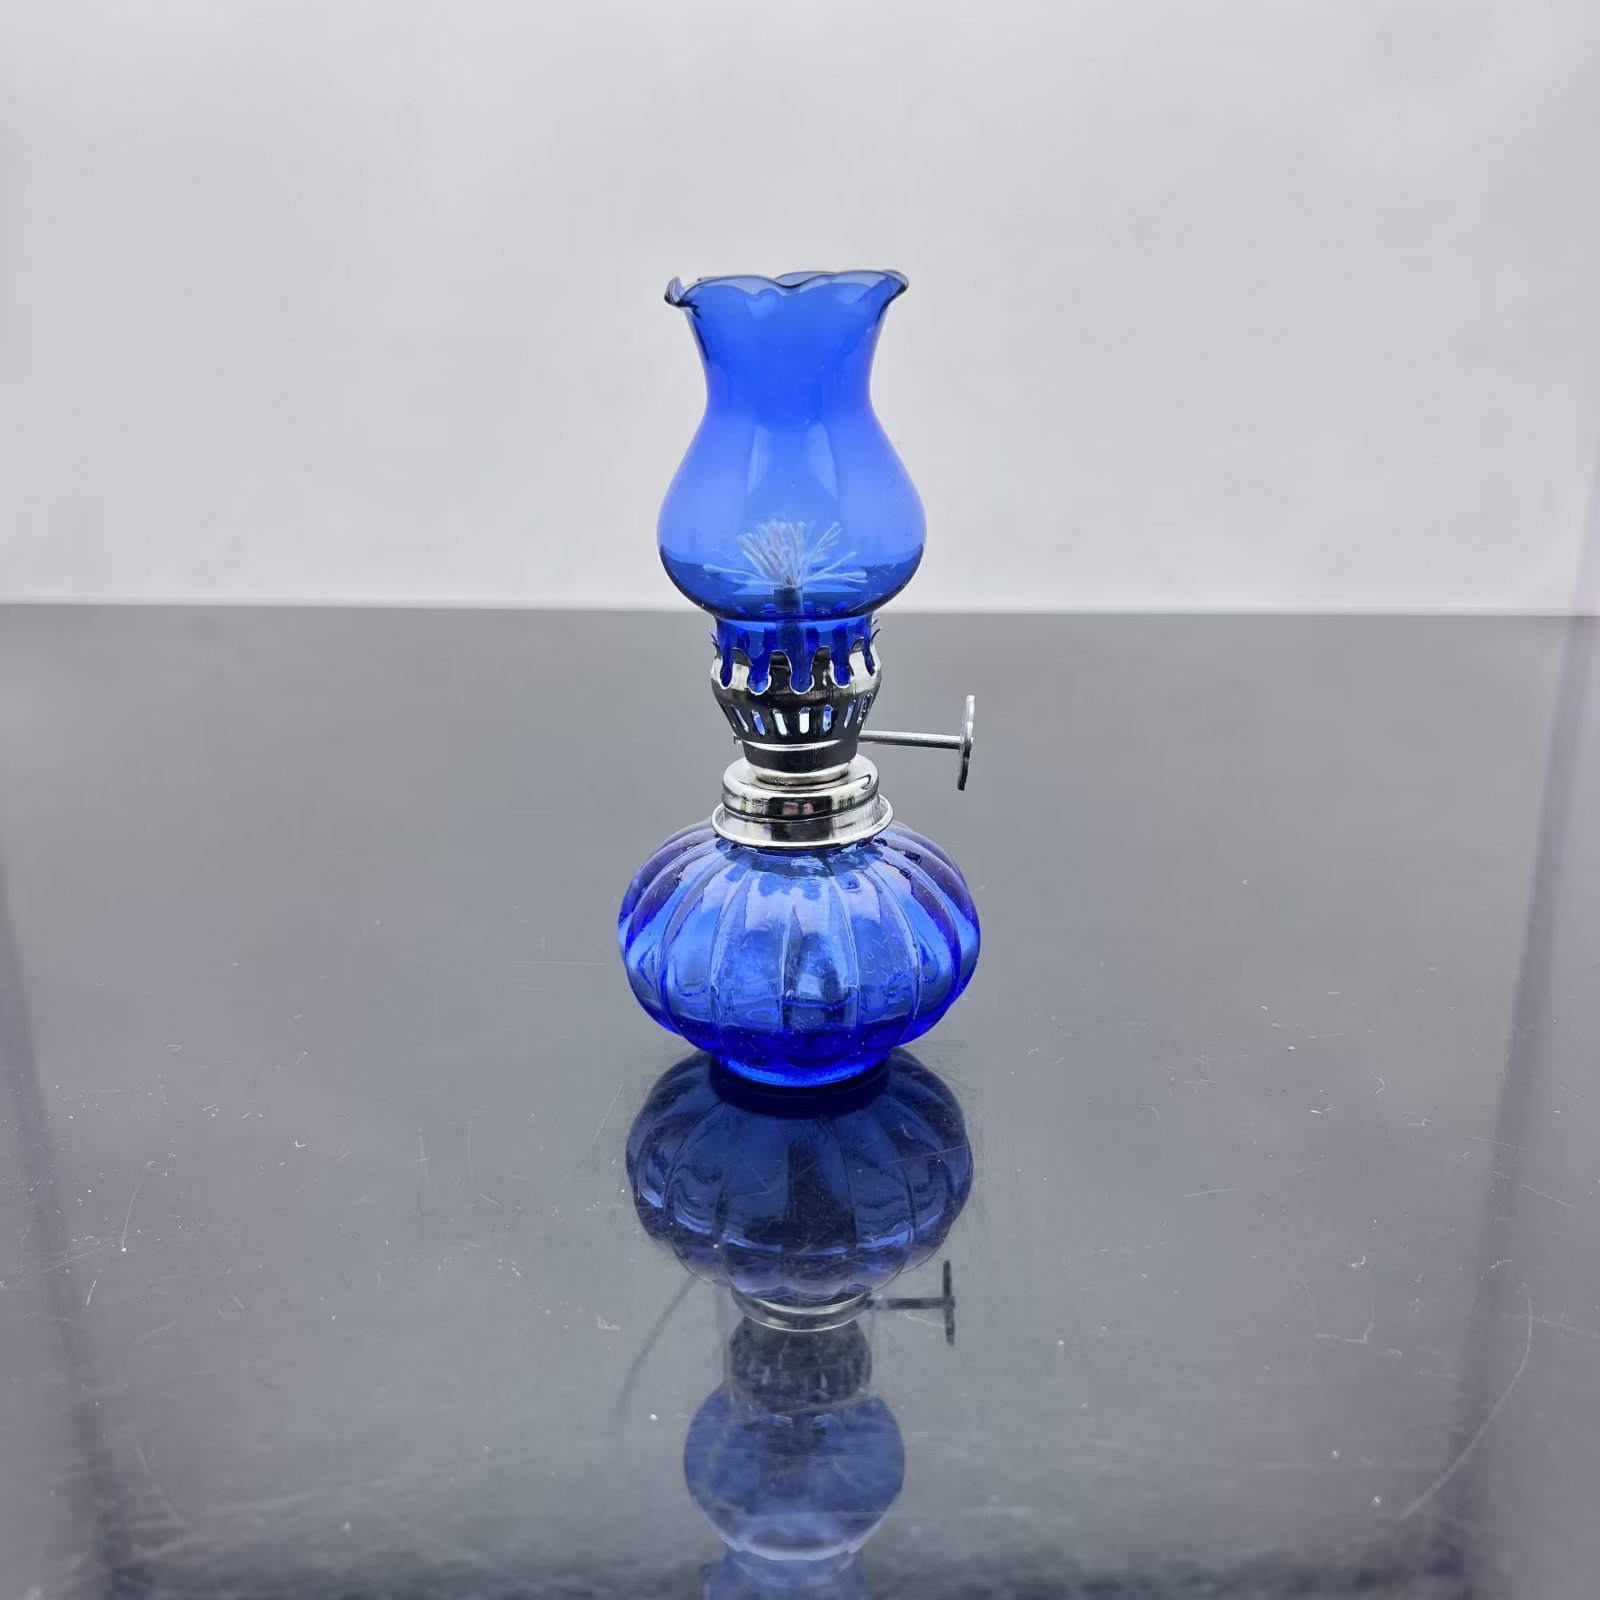 Glazen rookpijp water waterpoelig gekleurde glazen alcohollamp sigarettenaccessoires